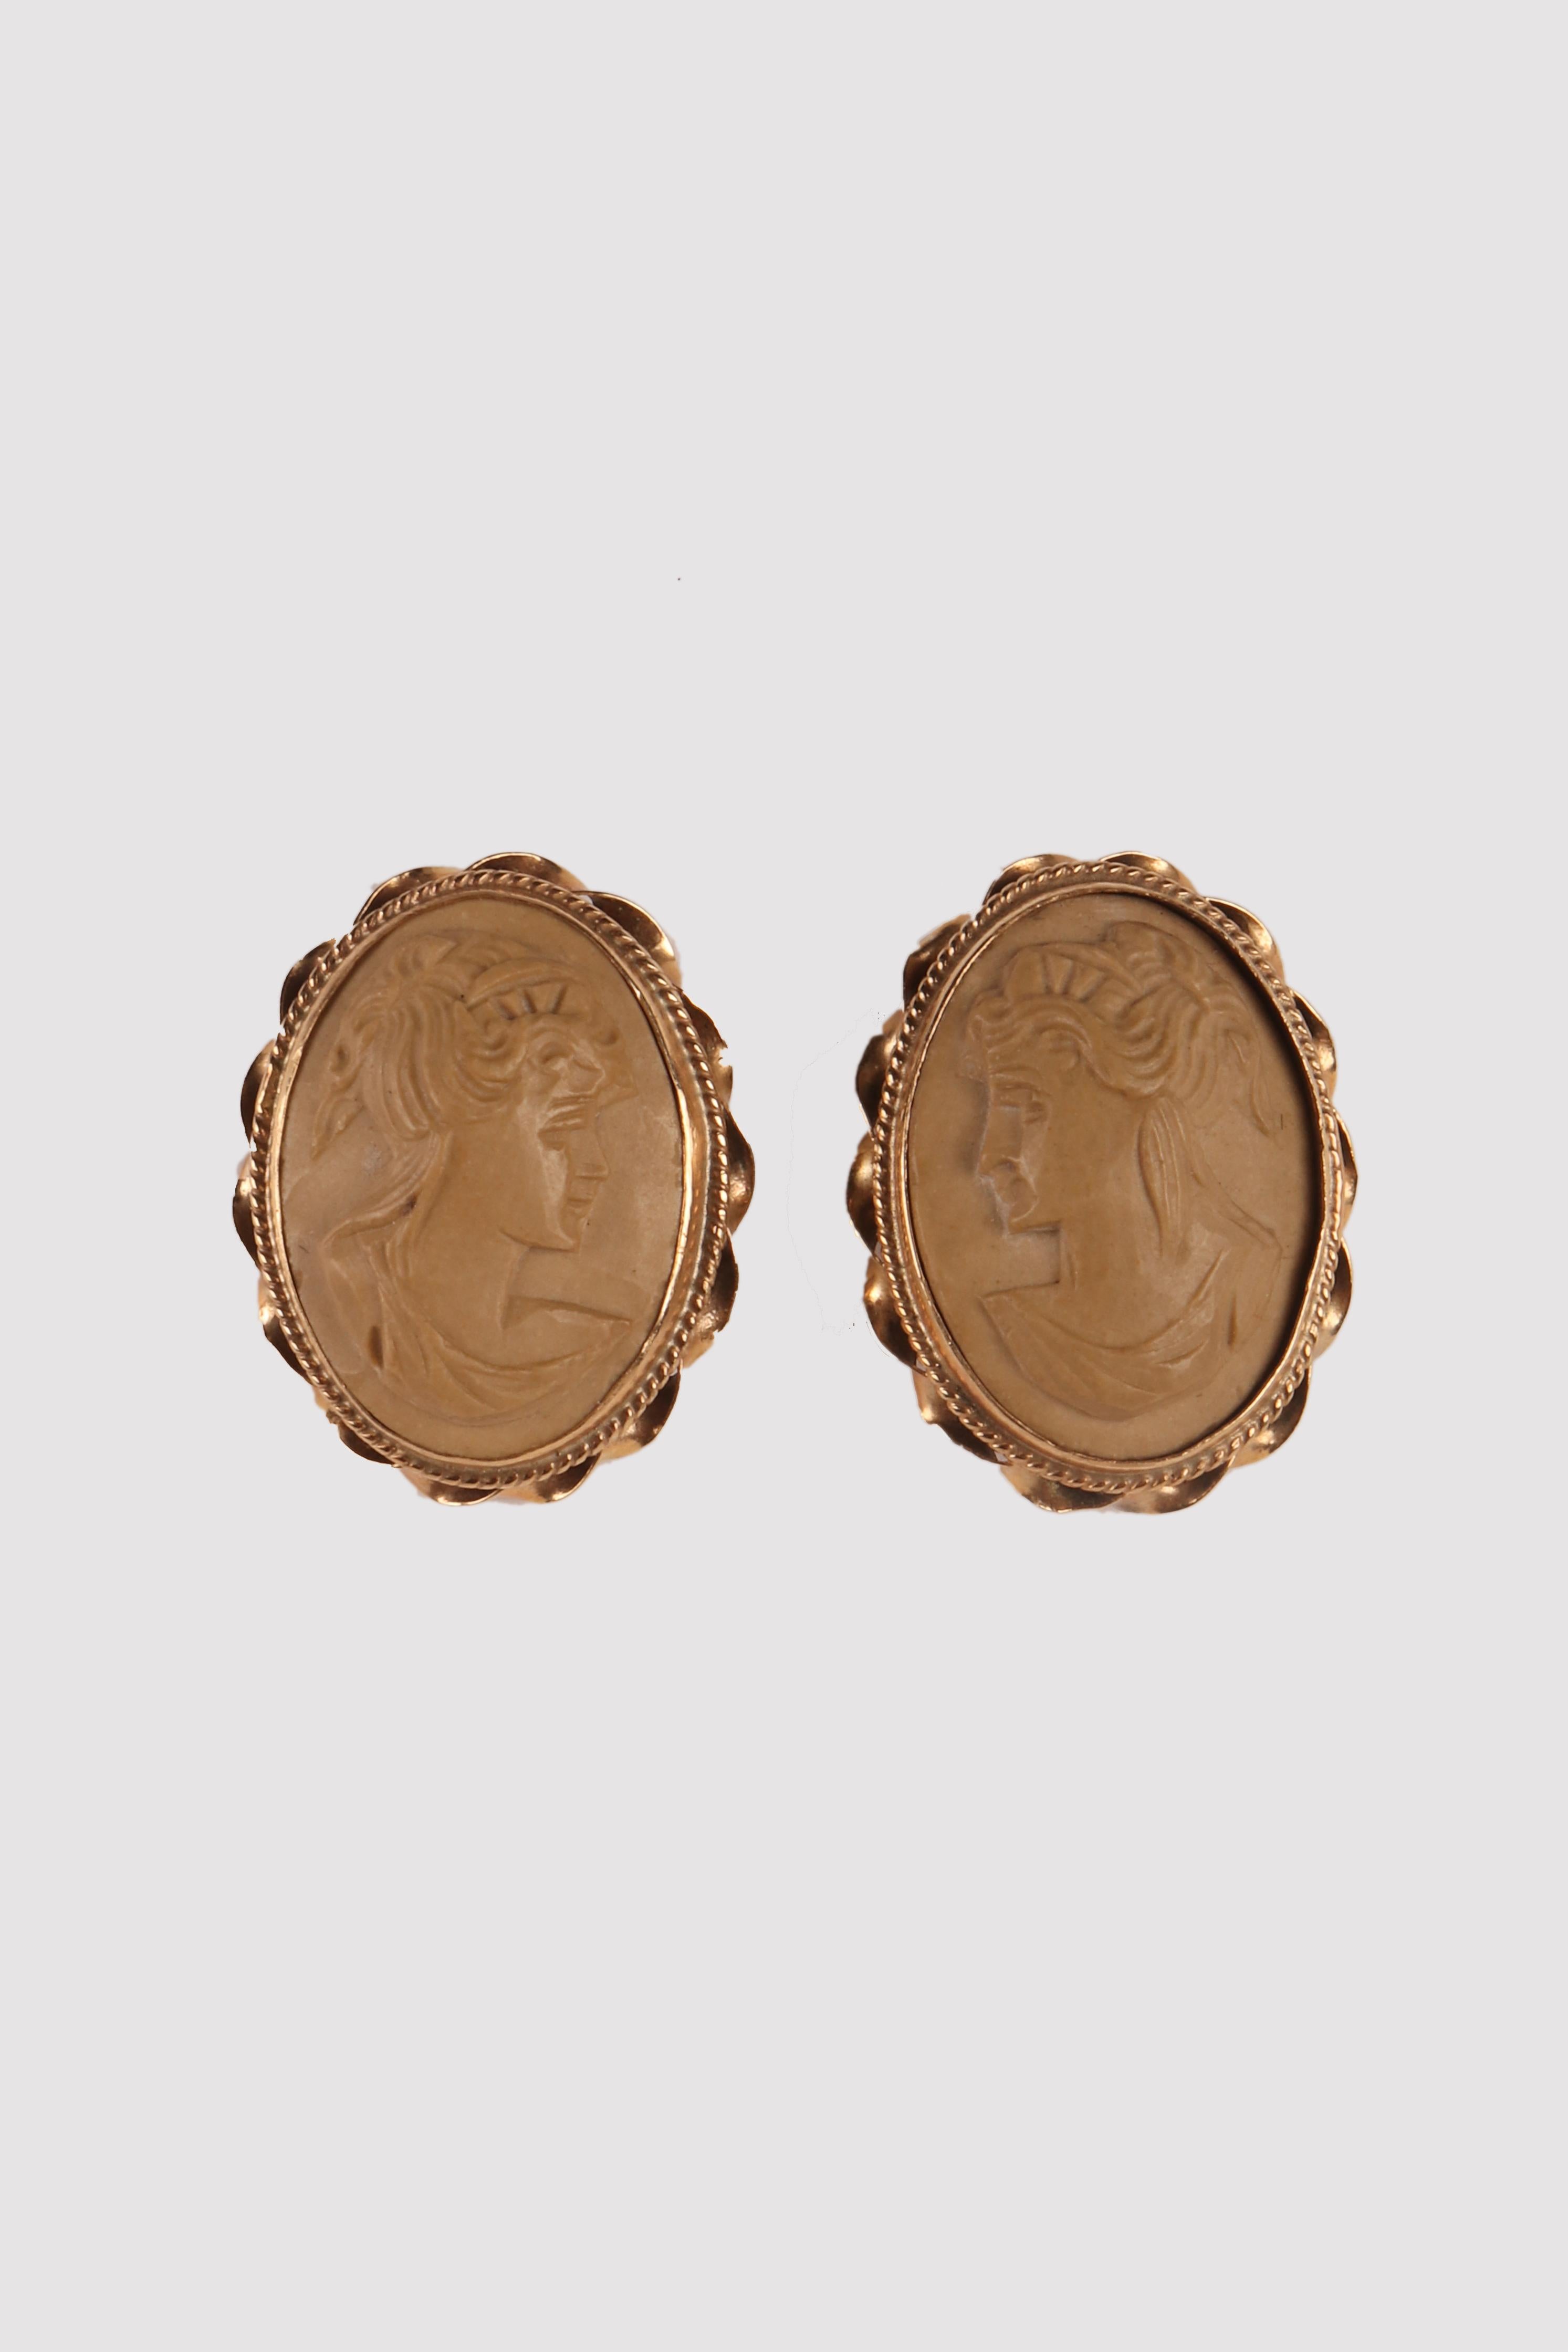 Ohrringe aus Gold und Lava. Die ovalen Kameen aus hellem Lavagestein stellen zwei Profilbüsten junger Frauen mit klassischen Frisuren auf einem glatten Hintergrund dar.
Die Fassung aus 14-karätigem Gold besteht aus einer glatten vertikalen Lünette,